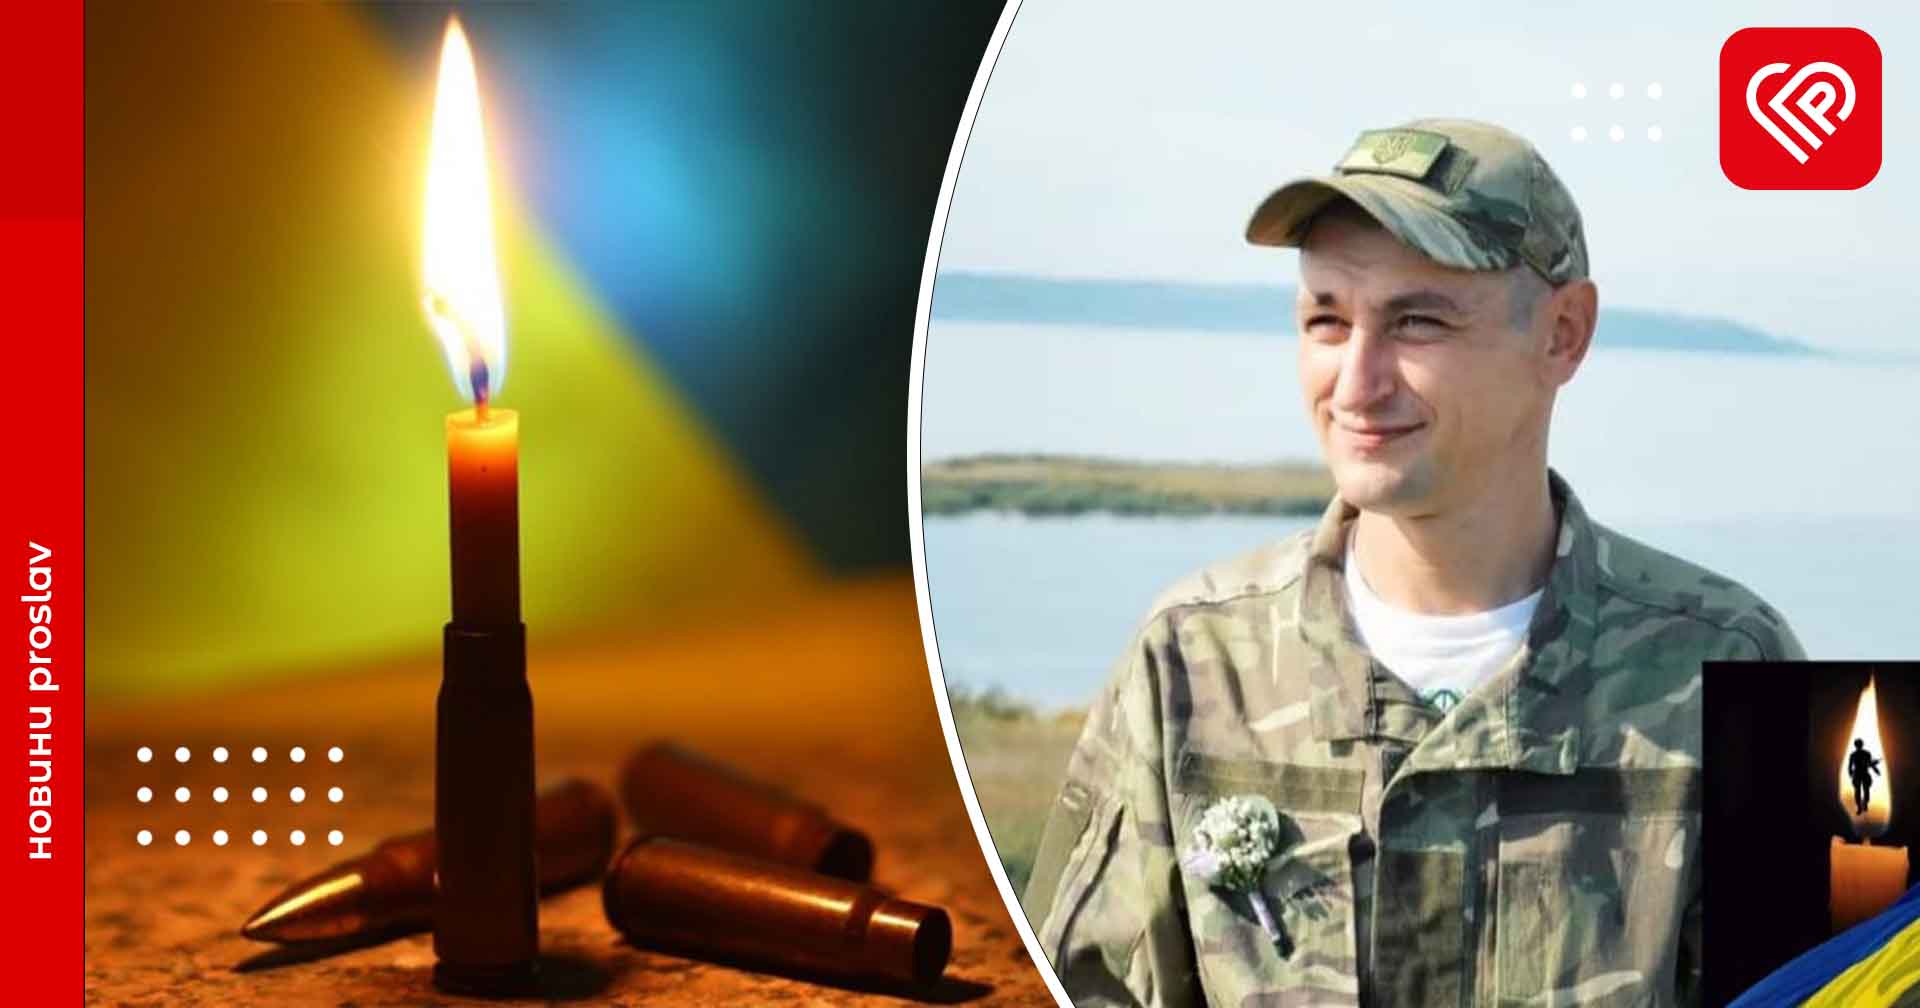 Від артилерійського обстрілу загинув воїн НГУ з Переяславщини Денис Денисюк